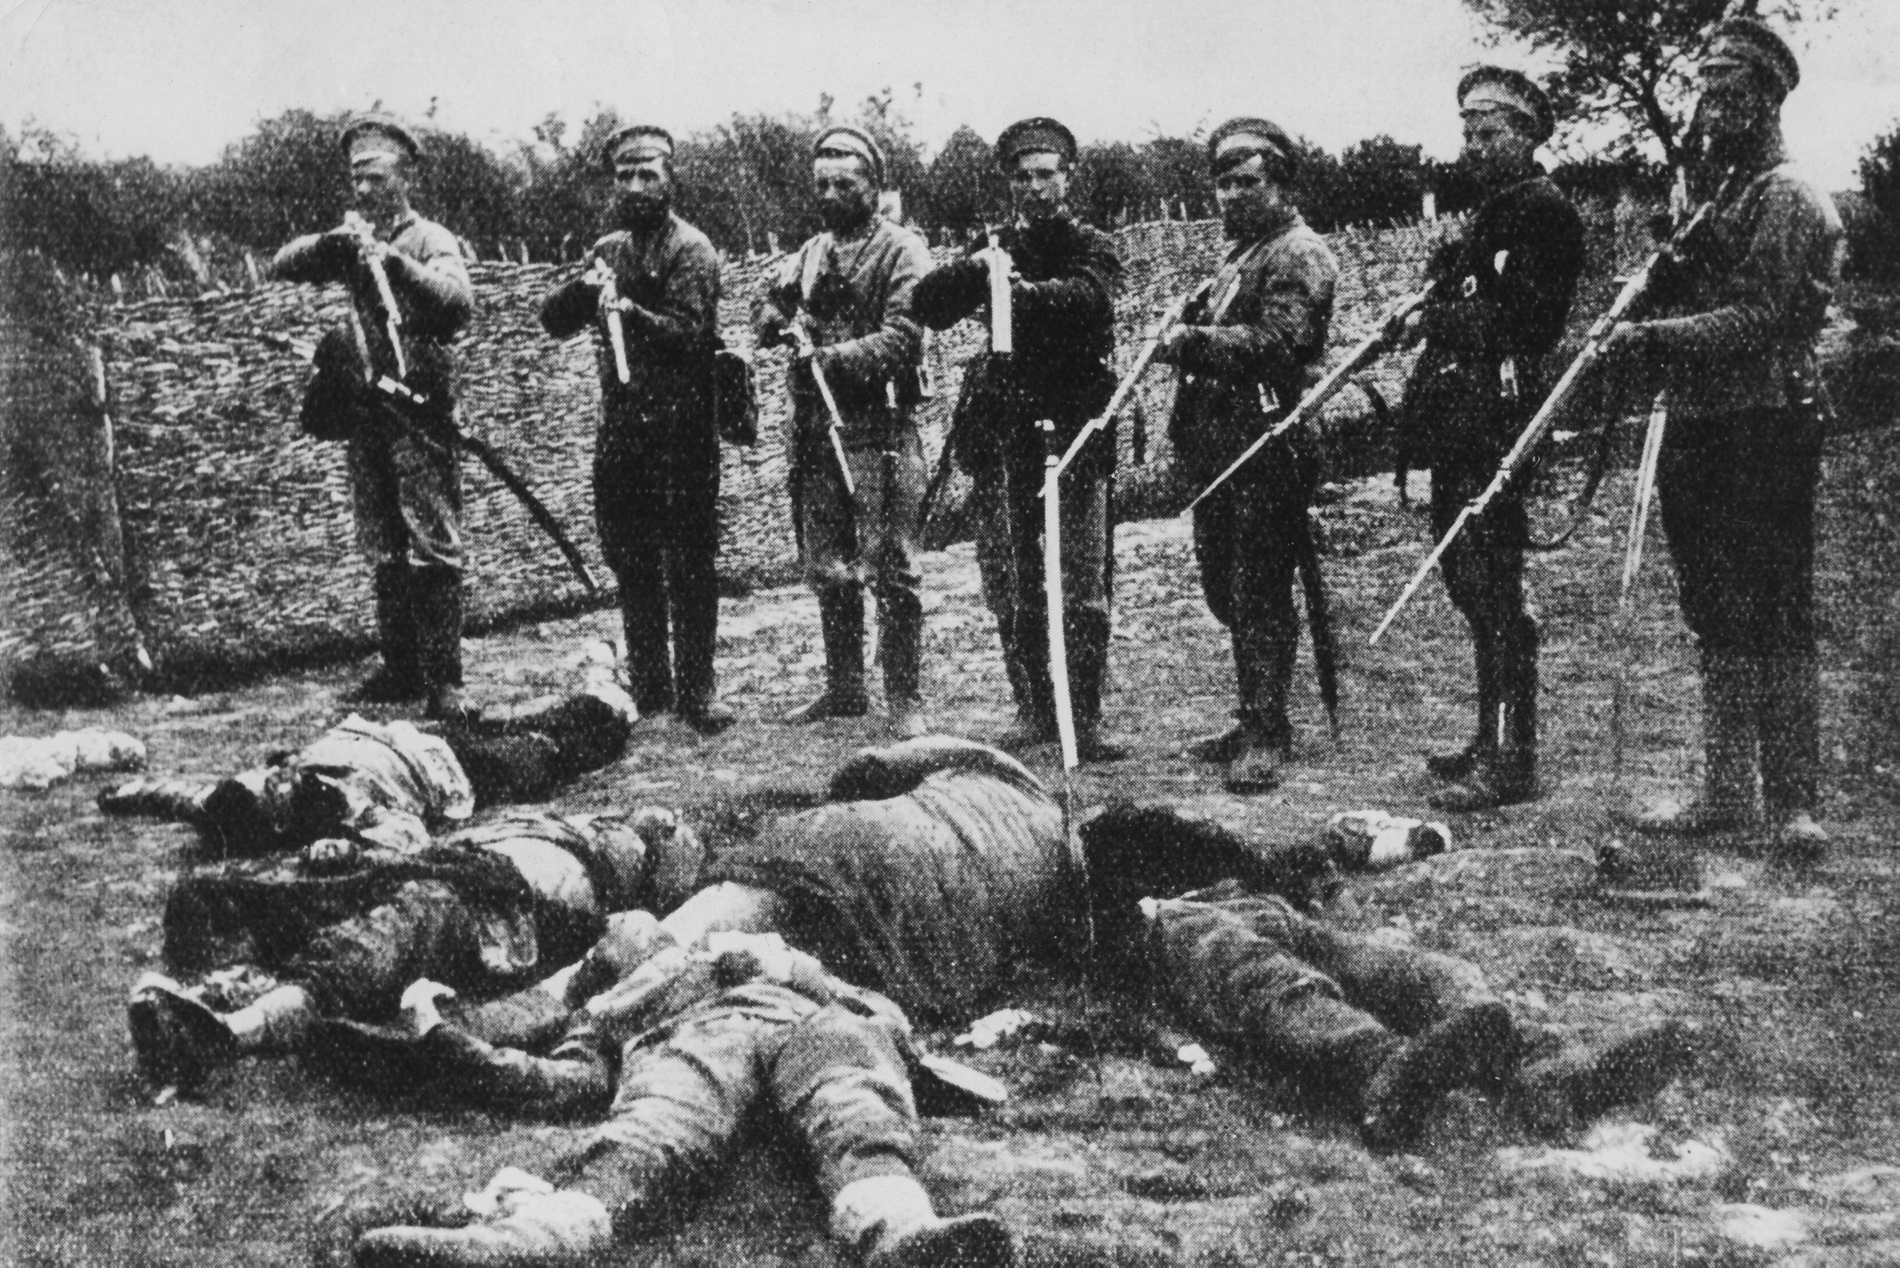 Żołnierze tzw. Białej Armii pozujący nad ciałami żołnierzy Armii Czerwonej podczas rosyjskiej wojny domowej, ok. 1917-1921 r.